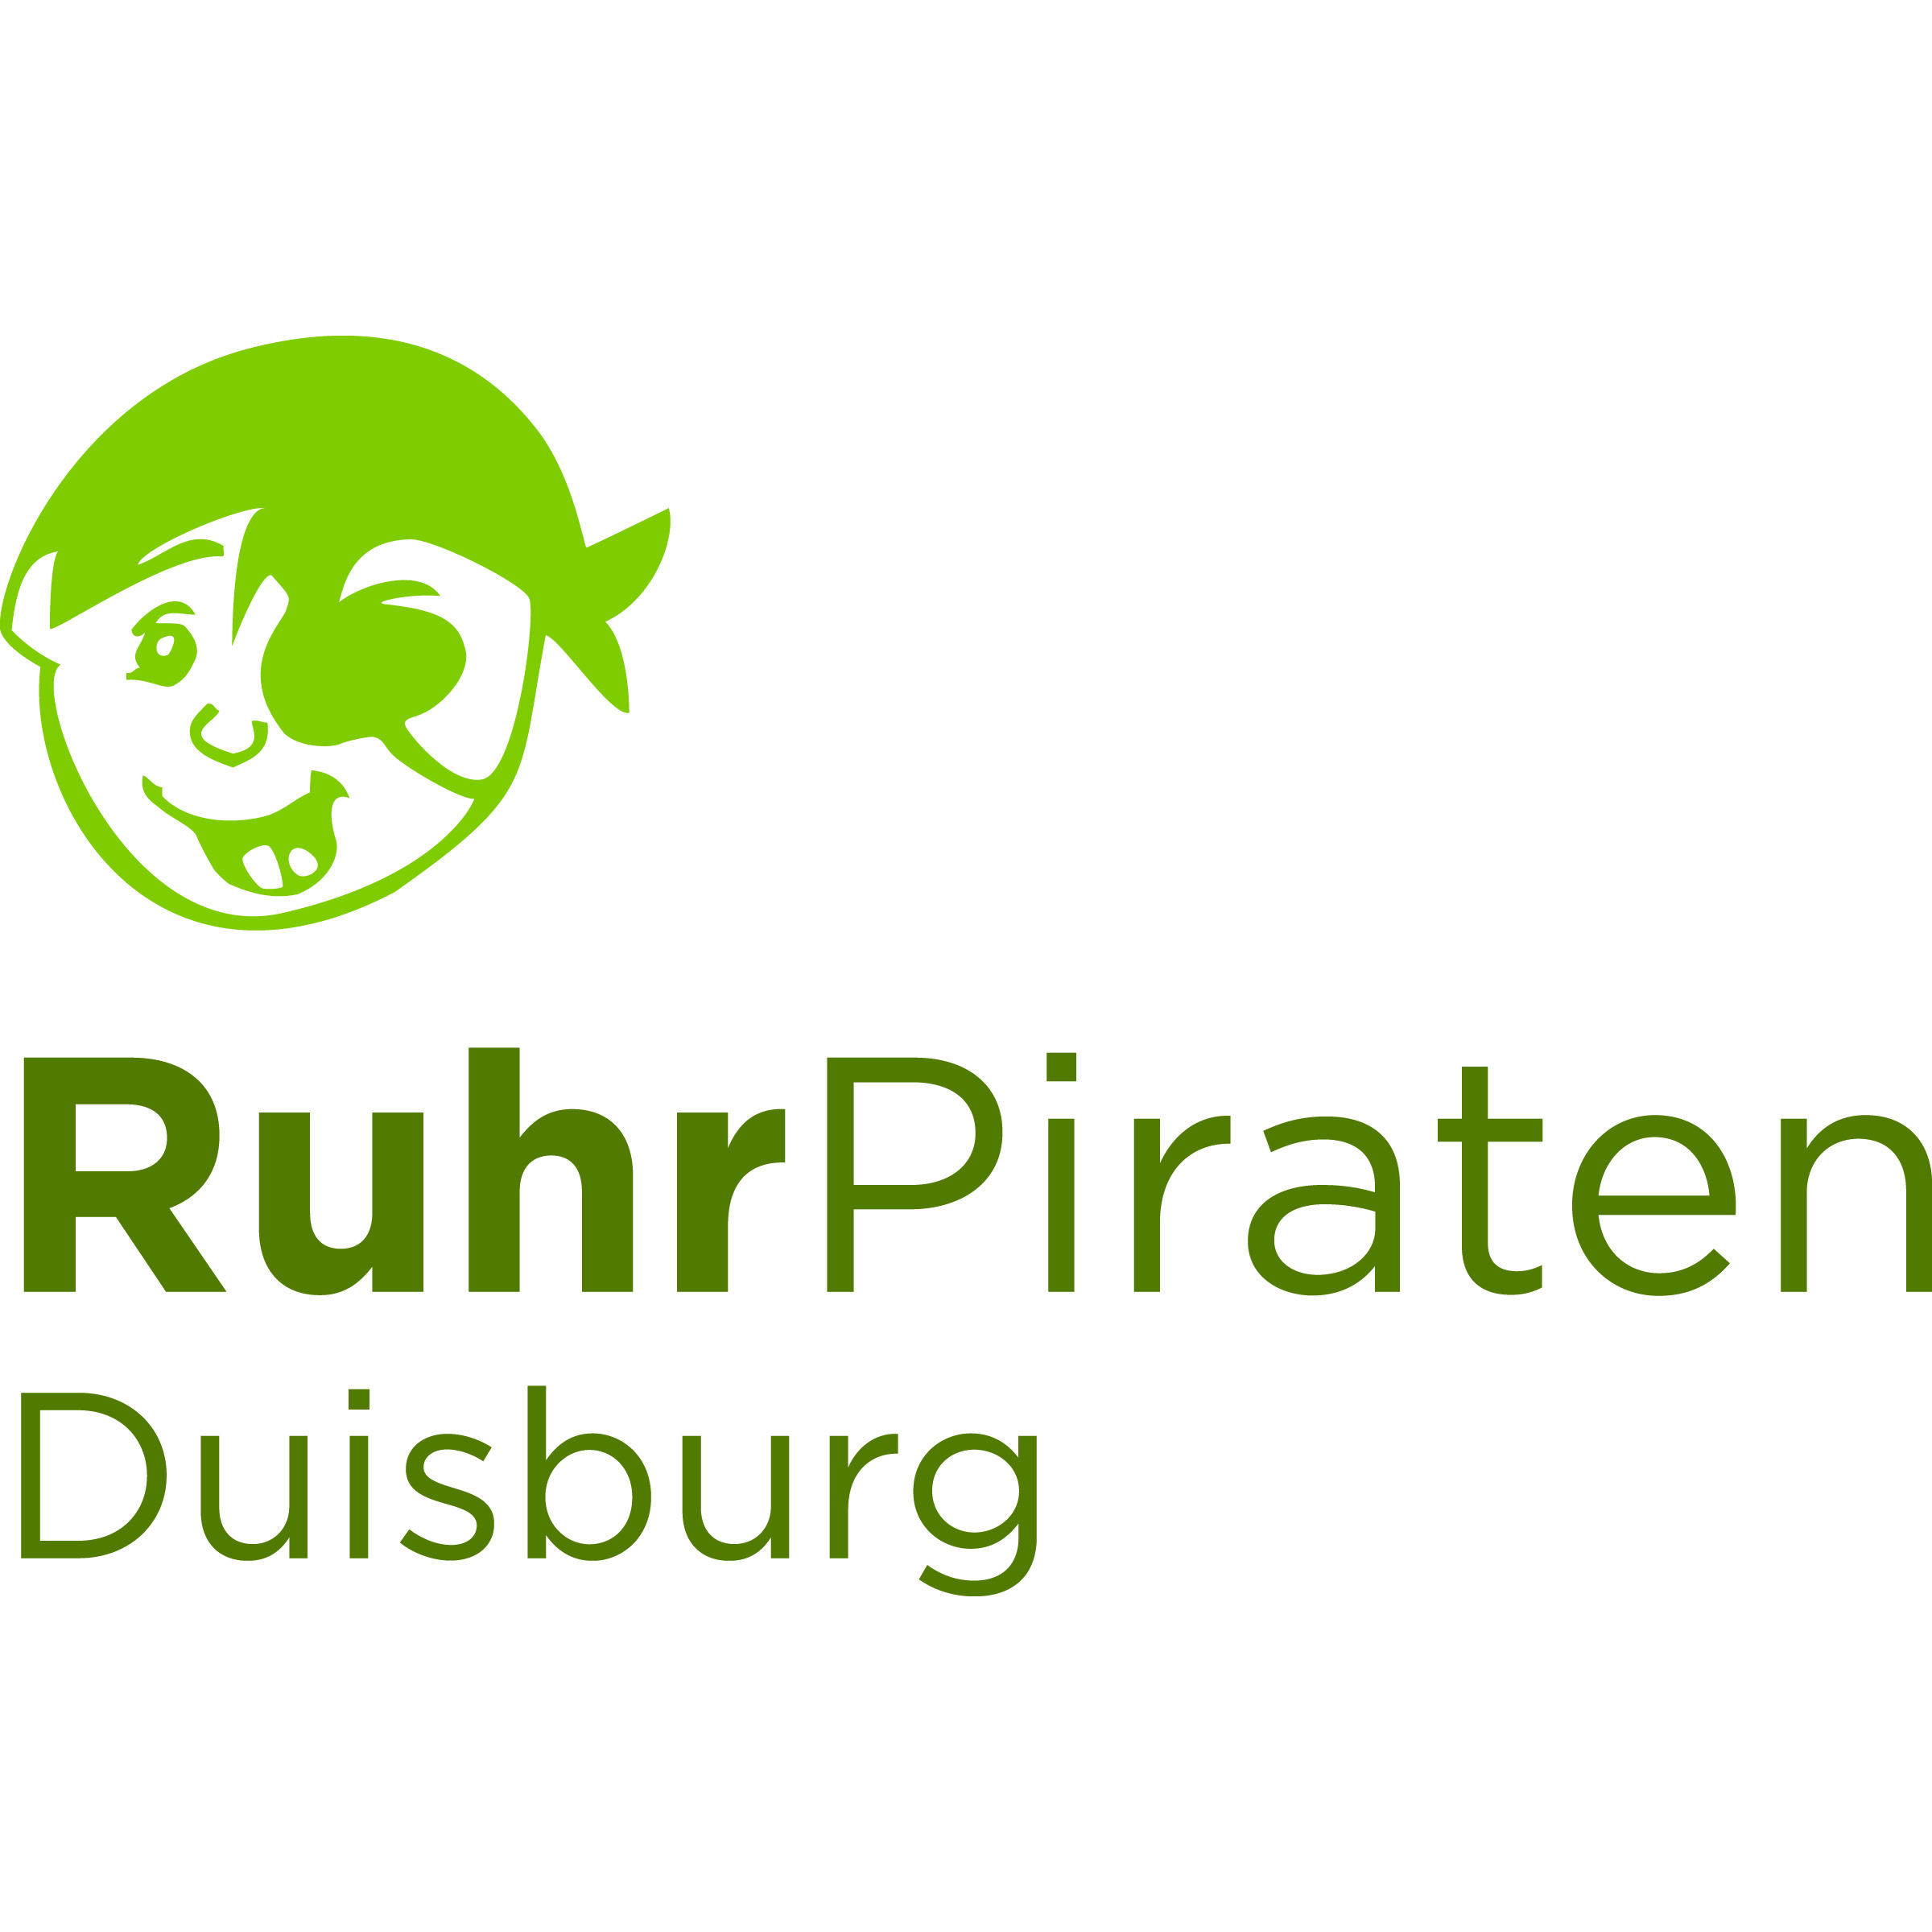 Ruhrpiraten Duisburg - pme Familienservice Logo